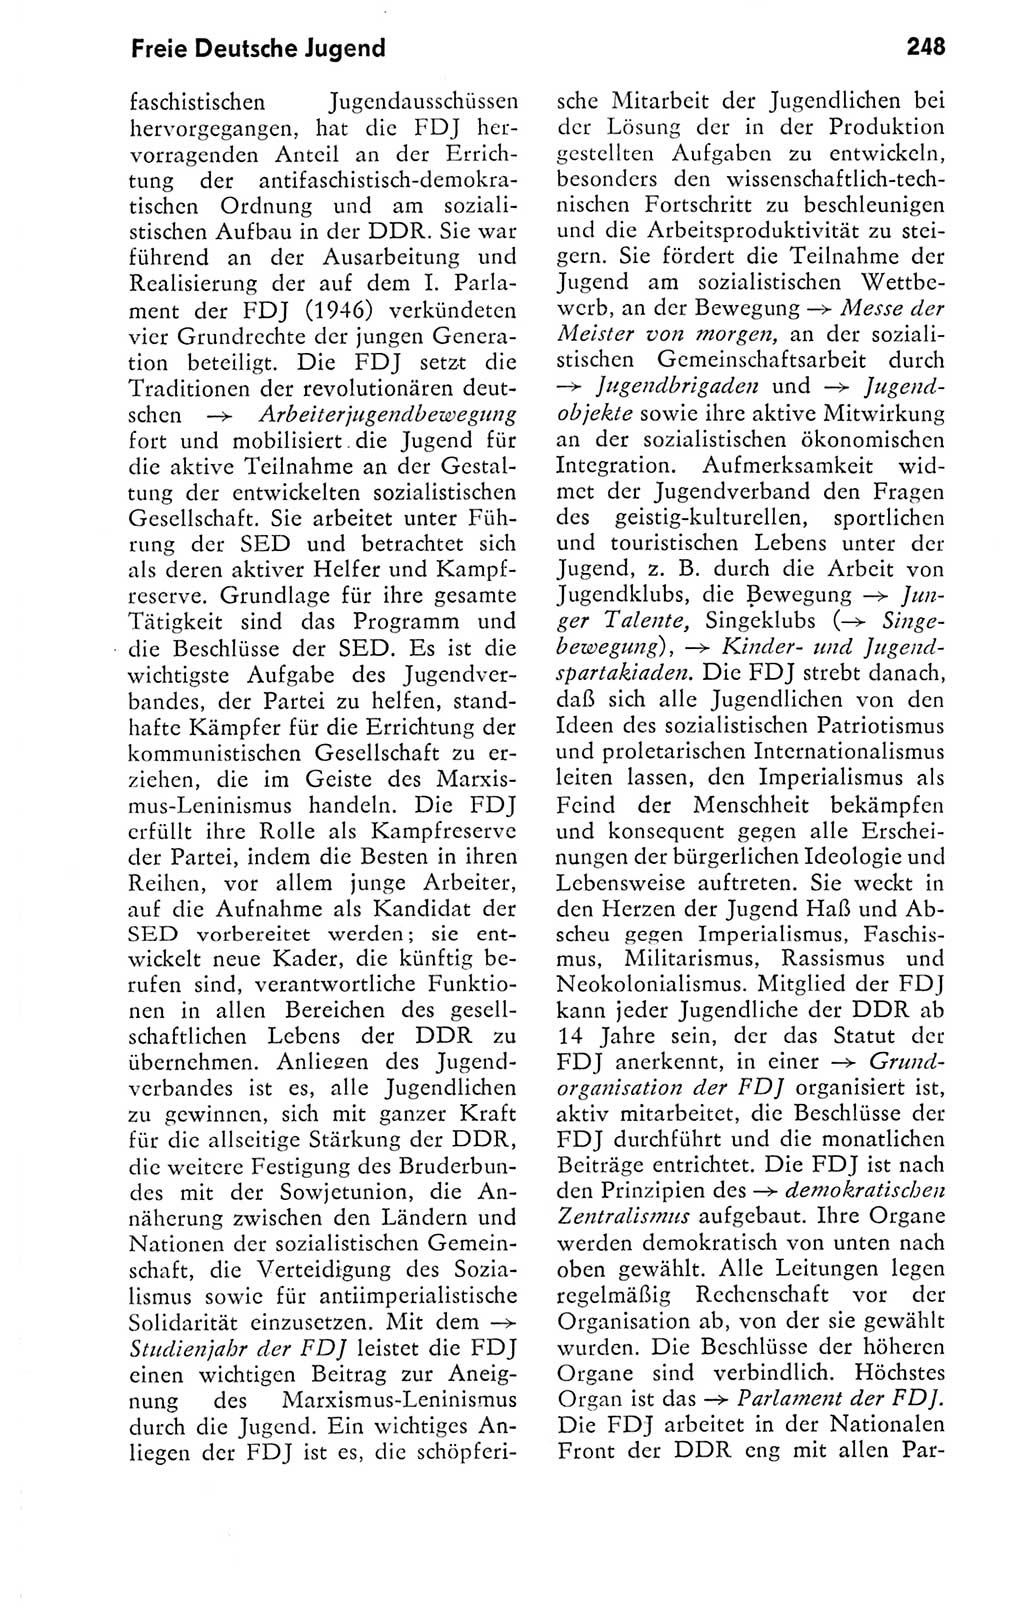 Kleines politisches Wörterbuch [Deutsche Demokratische Republik (DDR)] 1978, Seite 248 (Kl. pol. Wb. DDR 1978, S. 248)